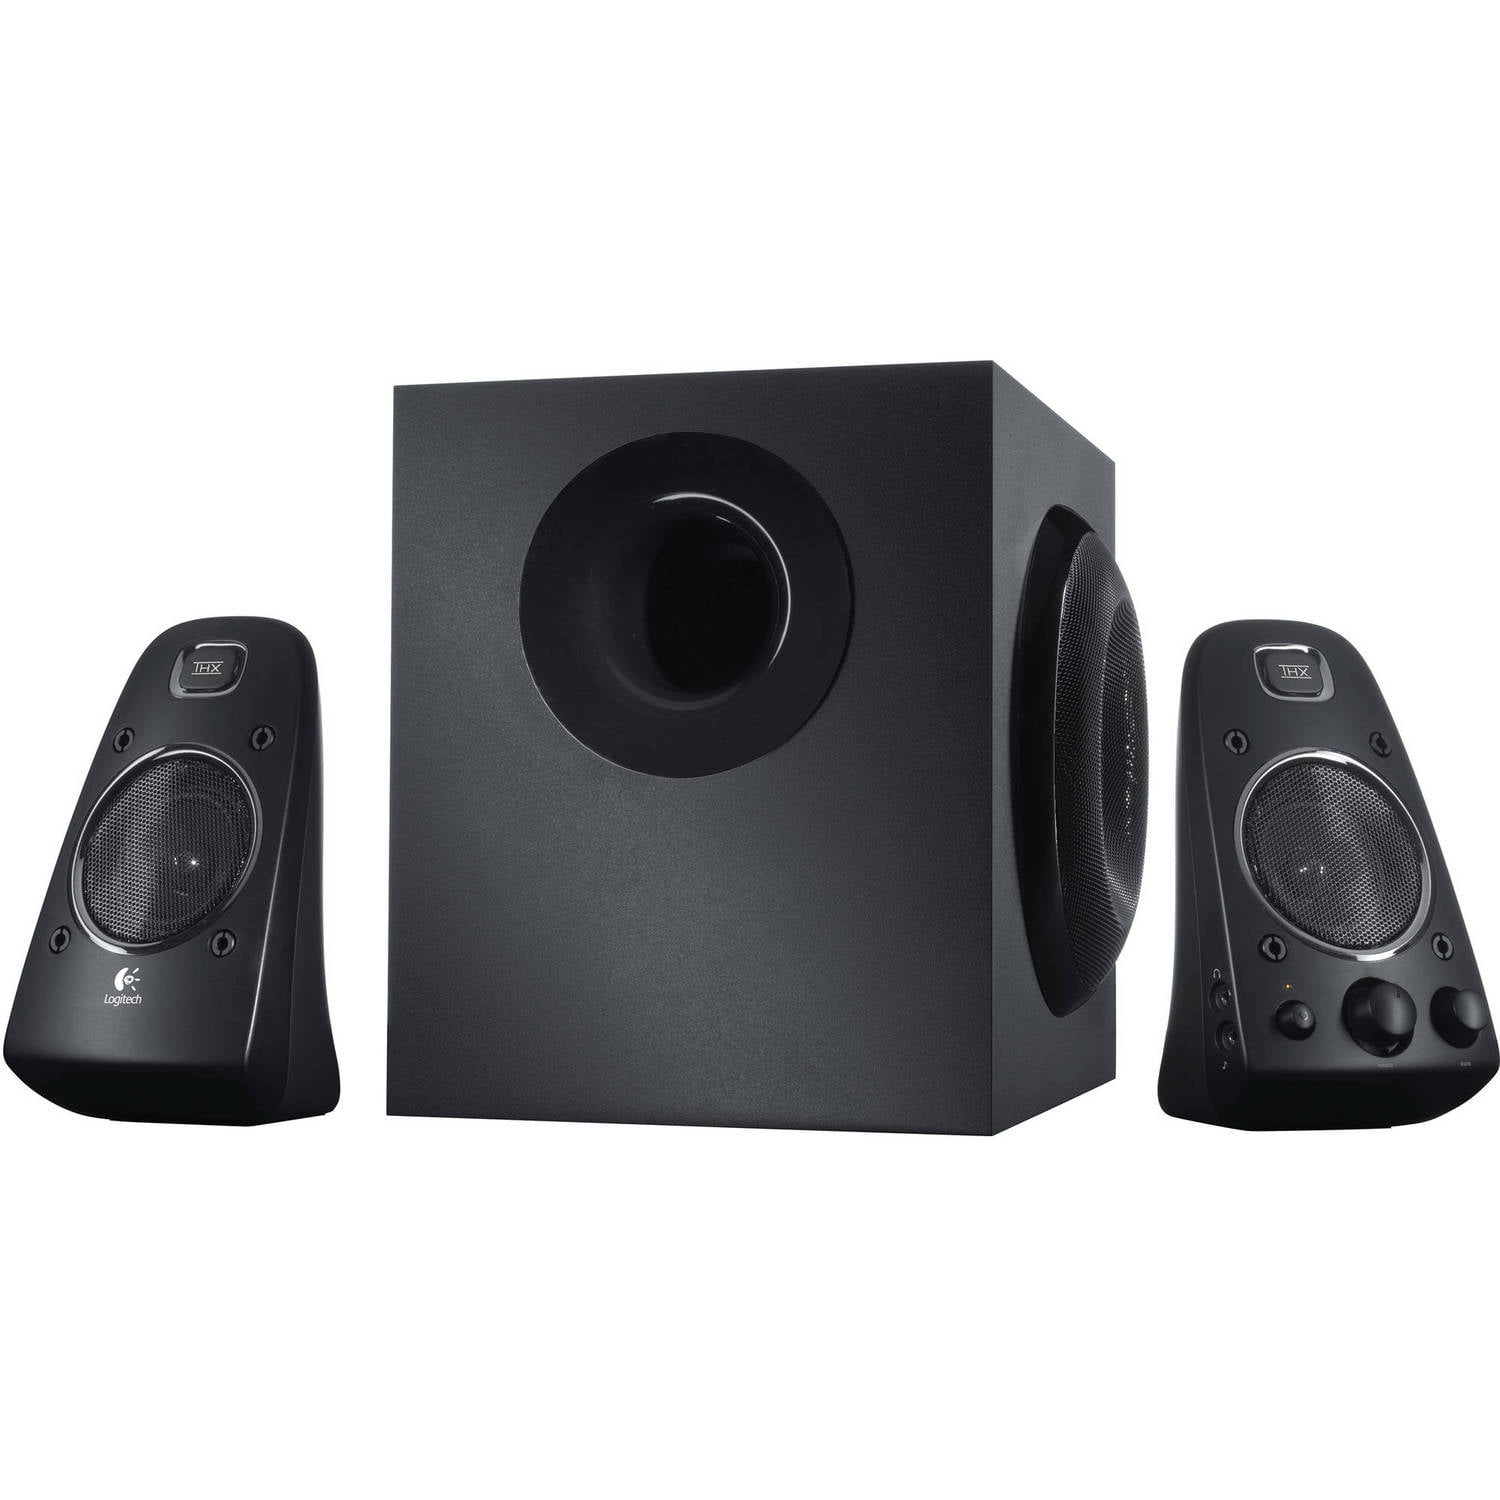  Logitech Z906 THX Certified 5.1 Speaker System 500W